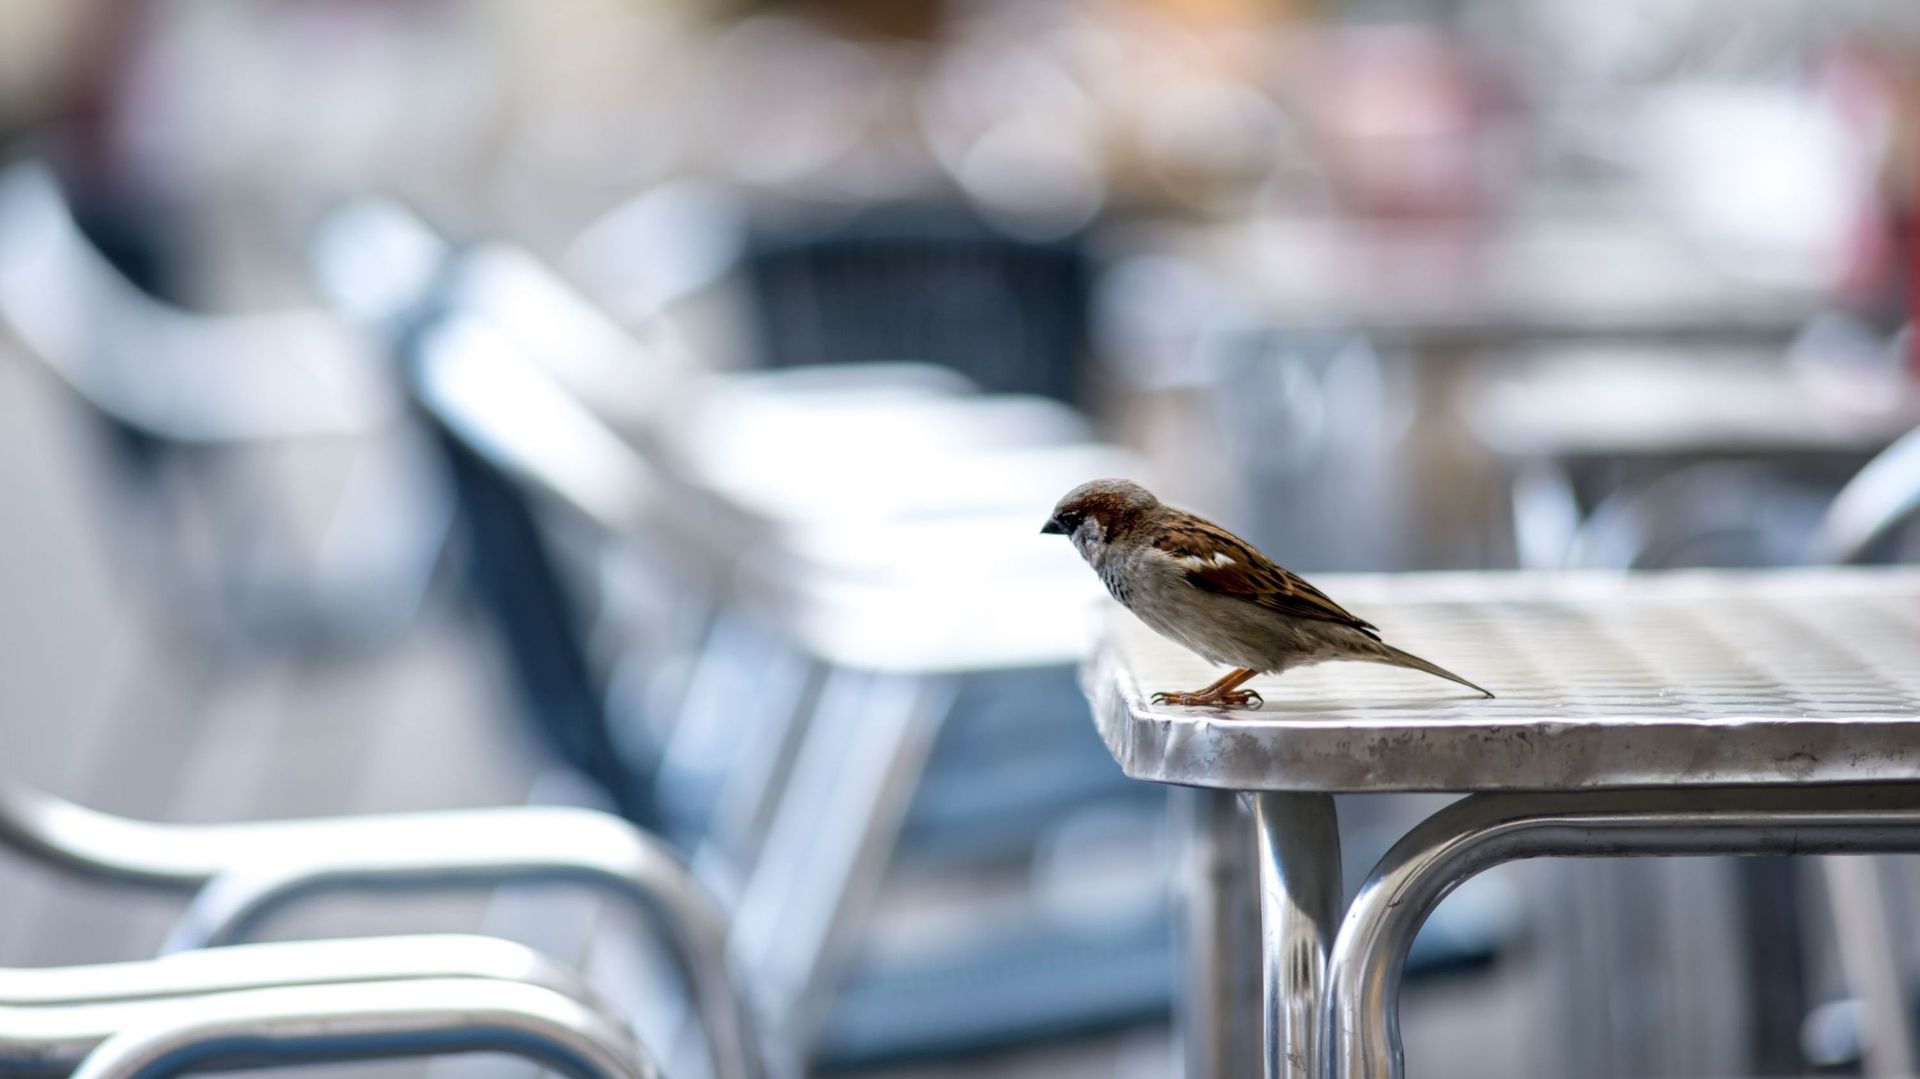 Le confinement modifie l'horaire du chant des oiseaux en ville selon une étude catalane